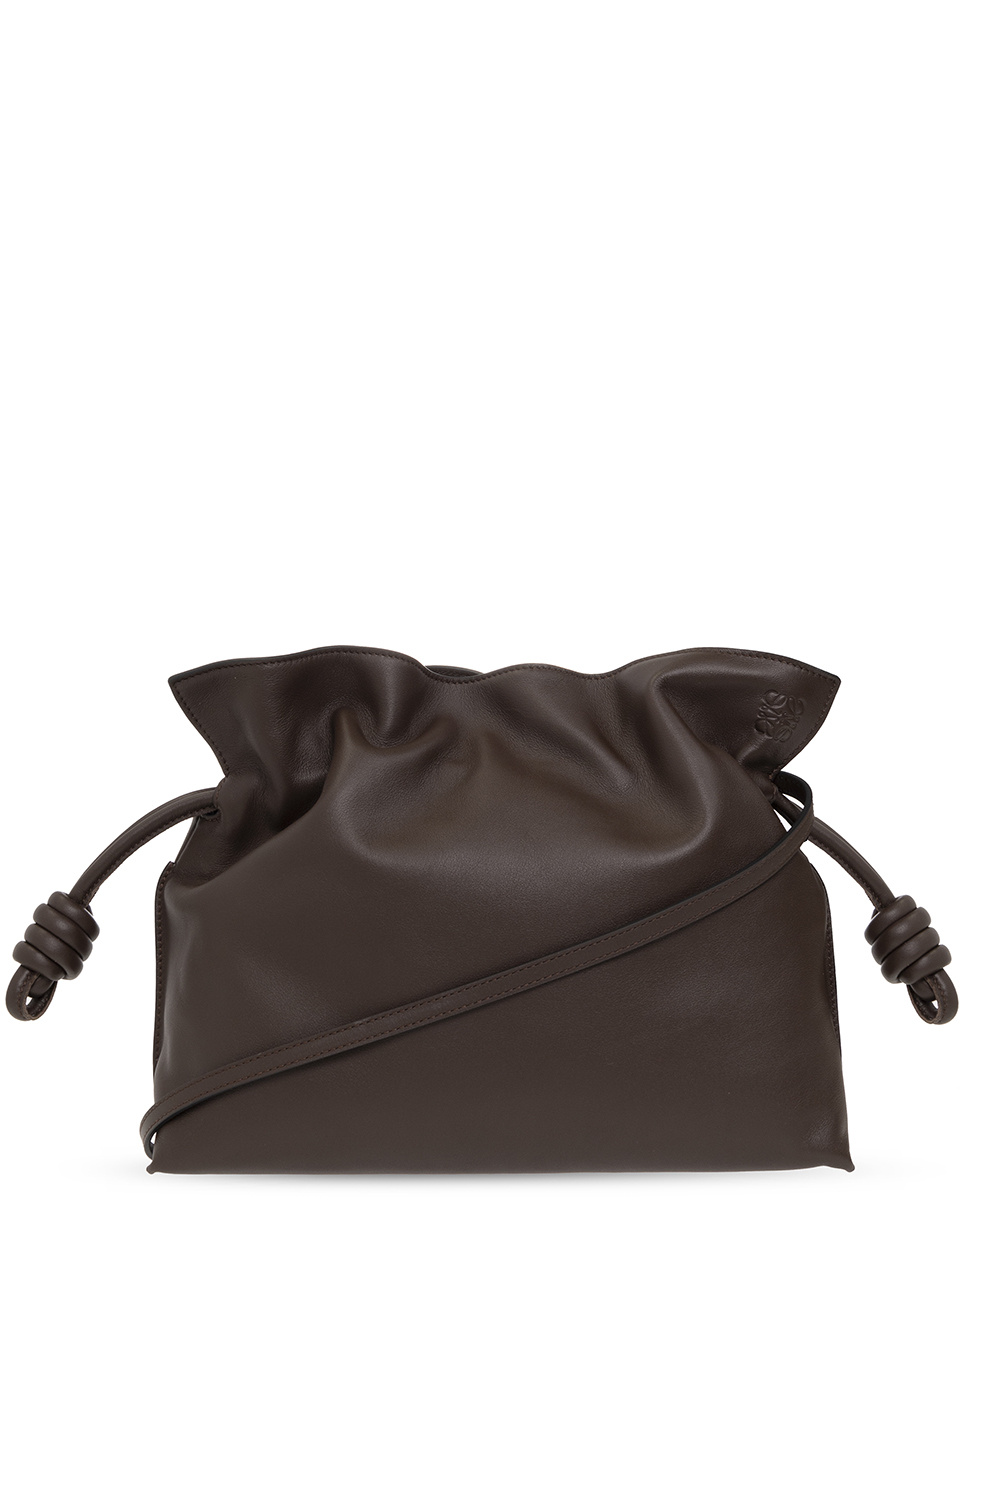 Brown ‘Flamenco’ shoulder bag Loewe - Vitkac Germany